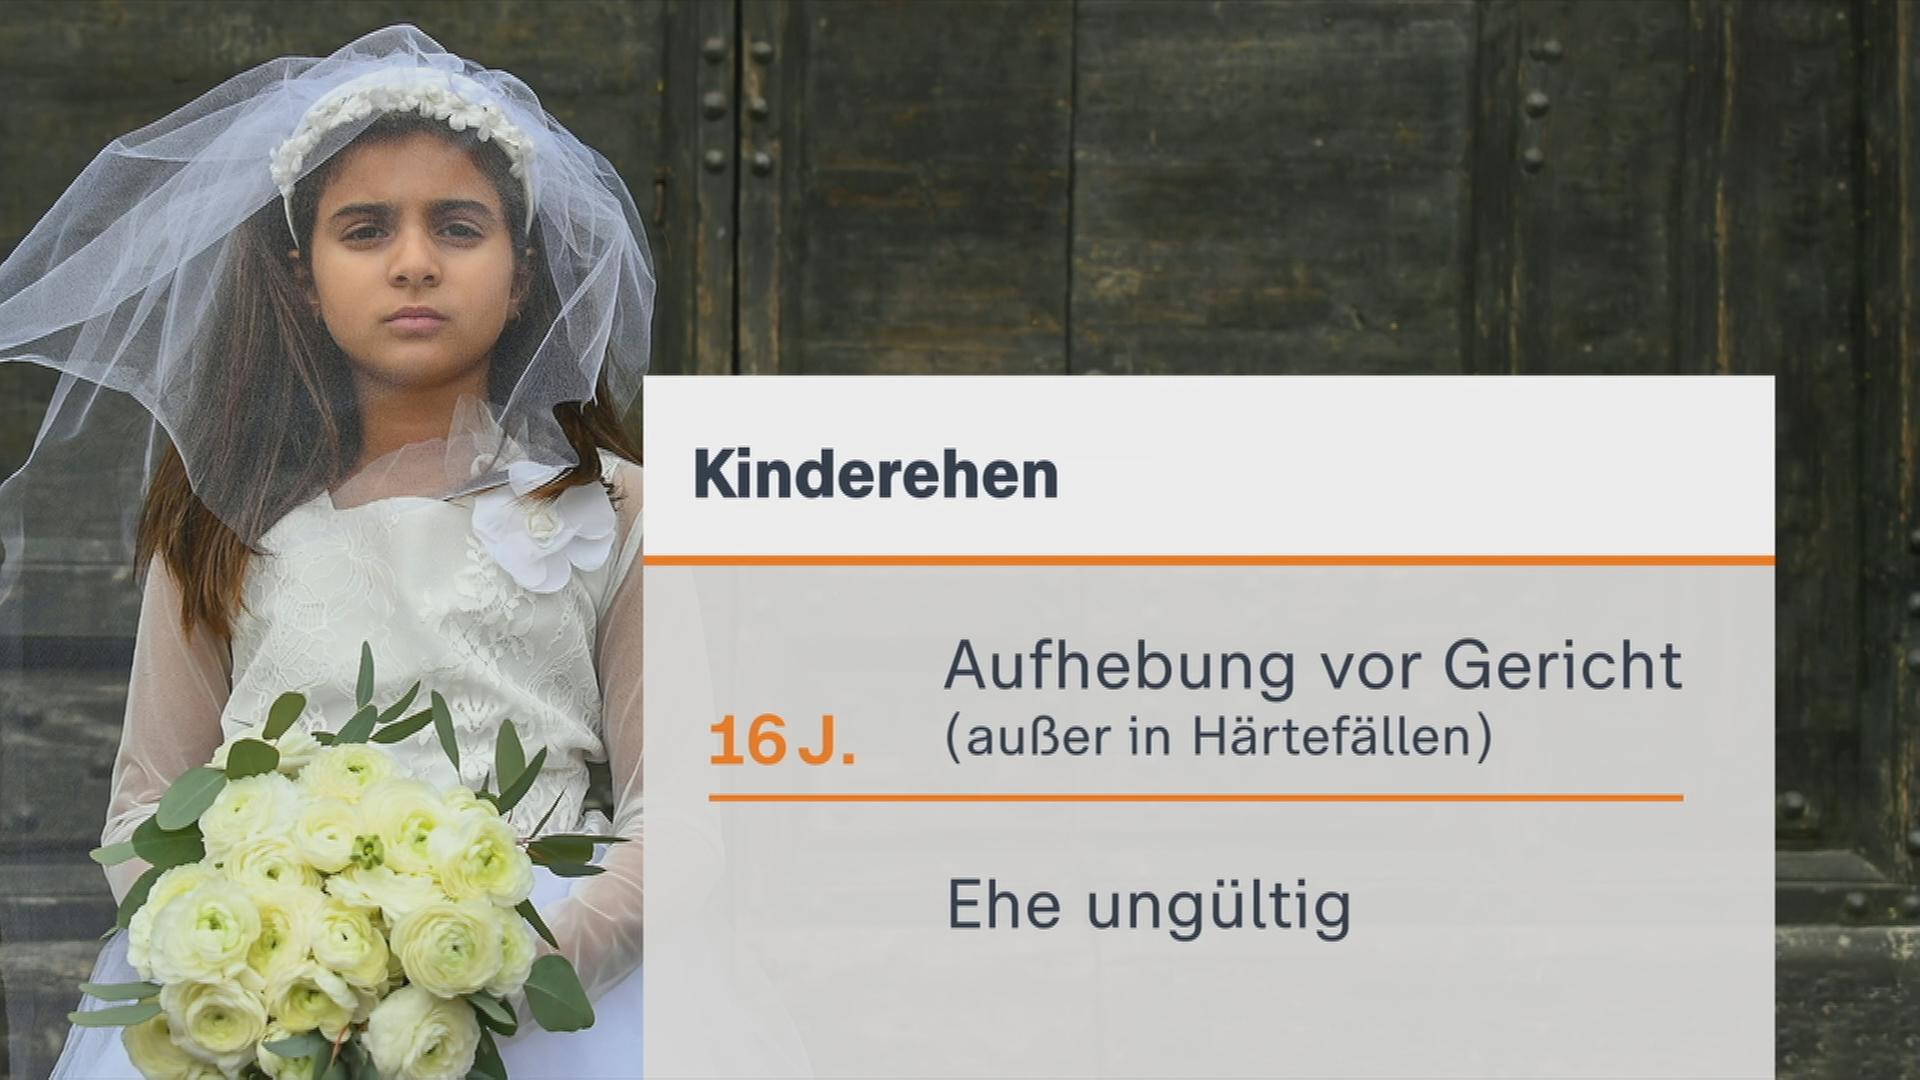 Ein kleines Mädchen trägt ein Hochzeitskleid und einen Blumenstrauß.